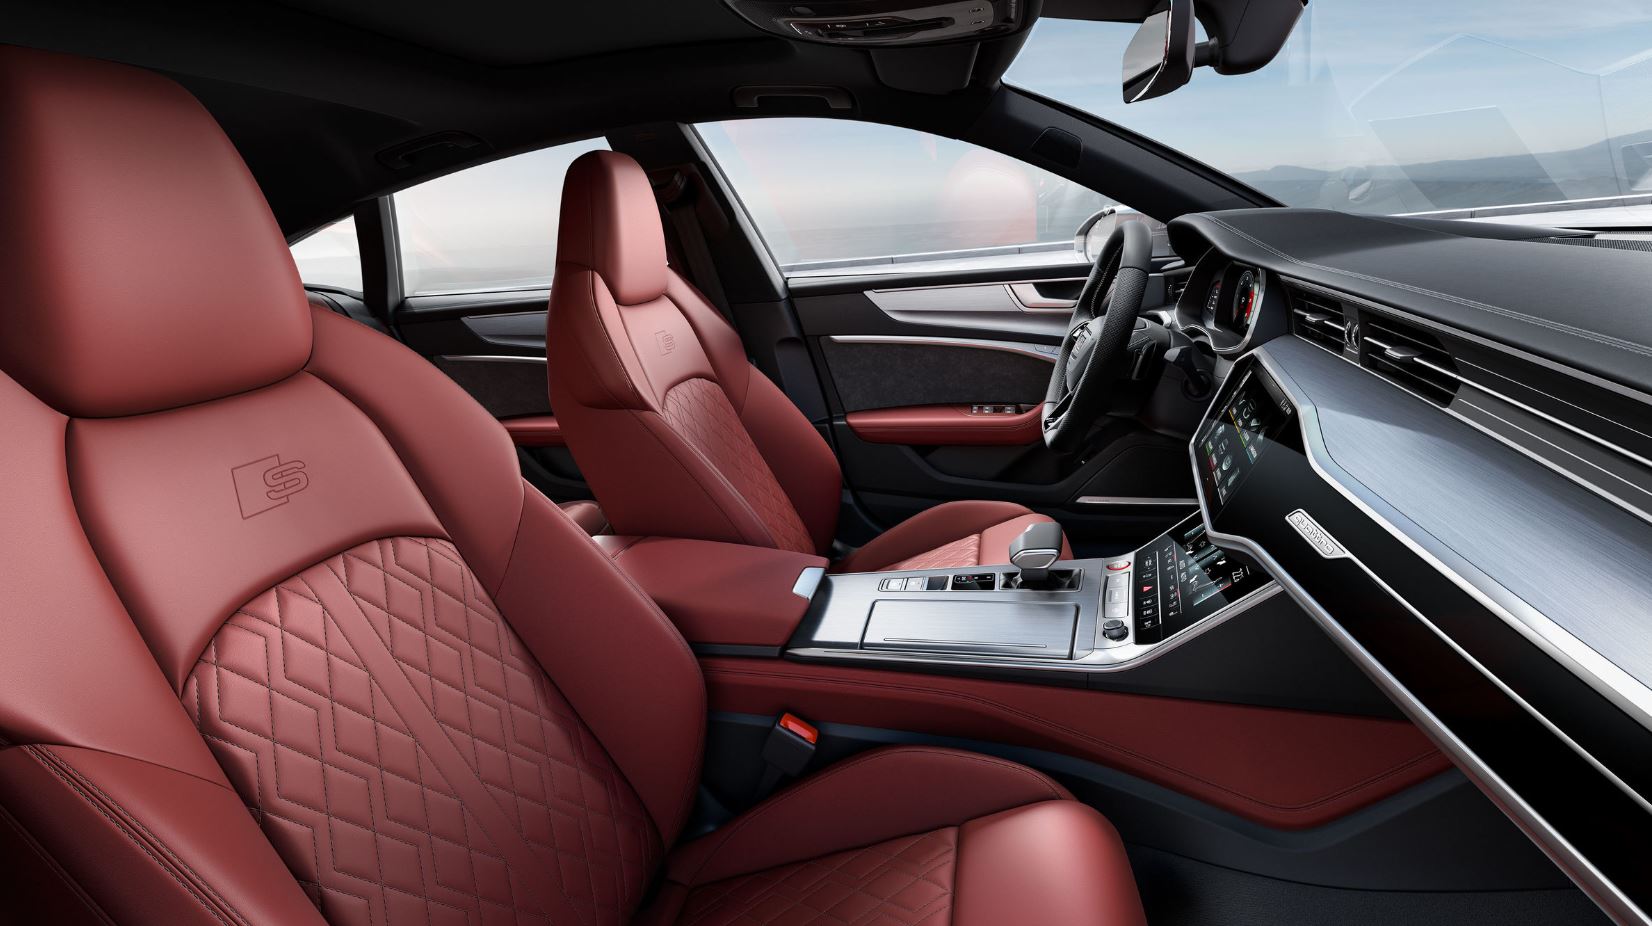 2019 Audi S6 ve S7 modellerin tanıtıldı: Hafif hibrit destekli TDI motor